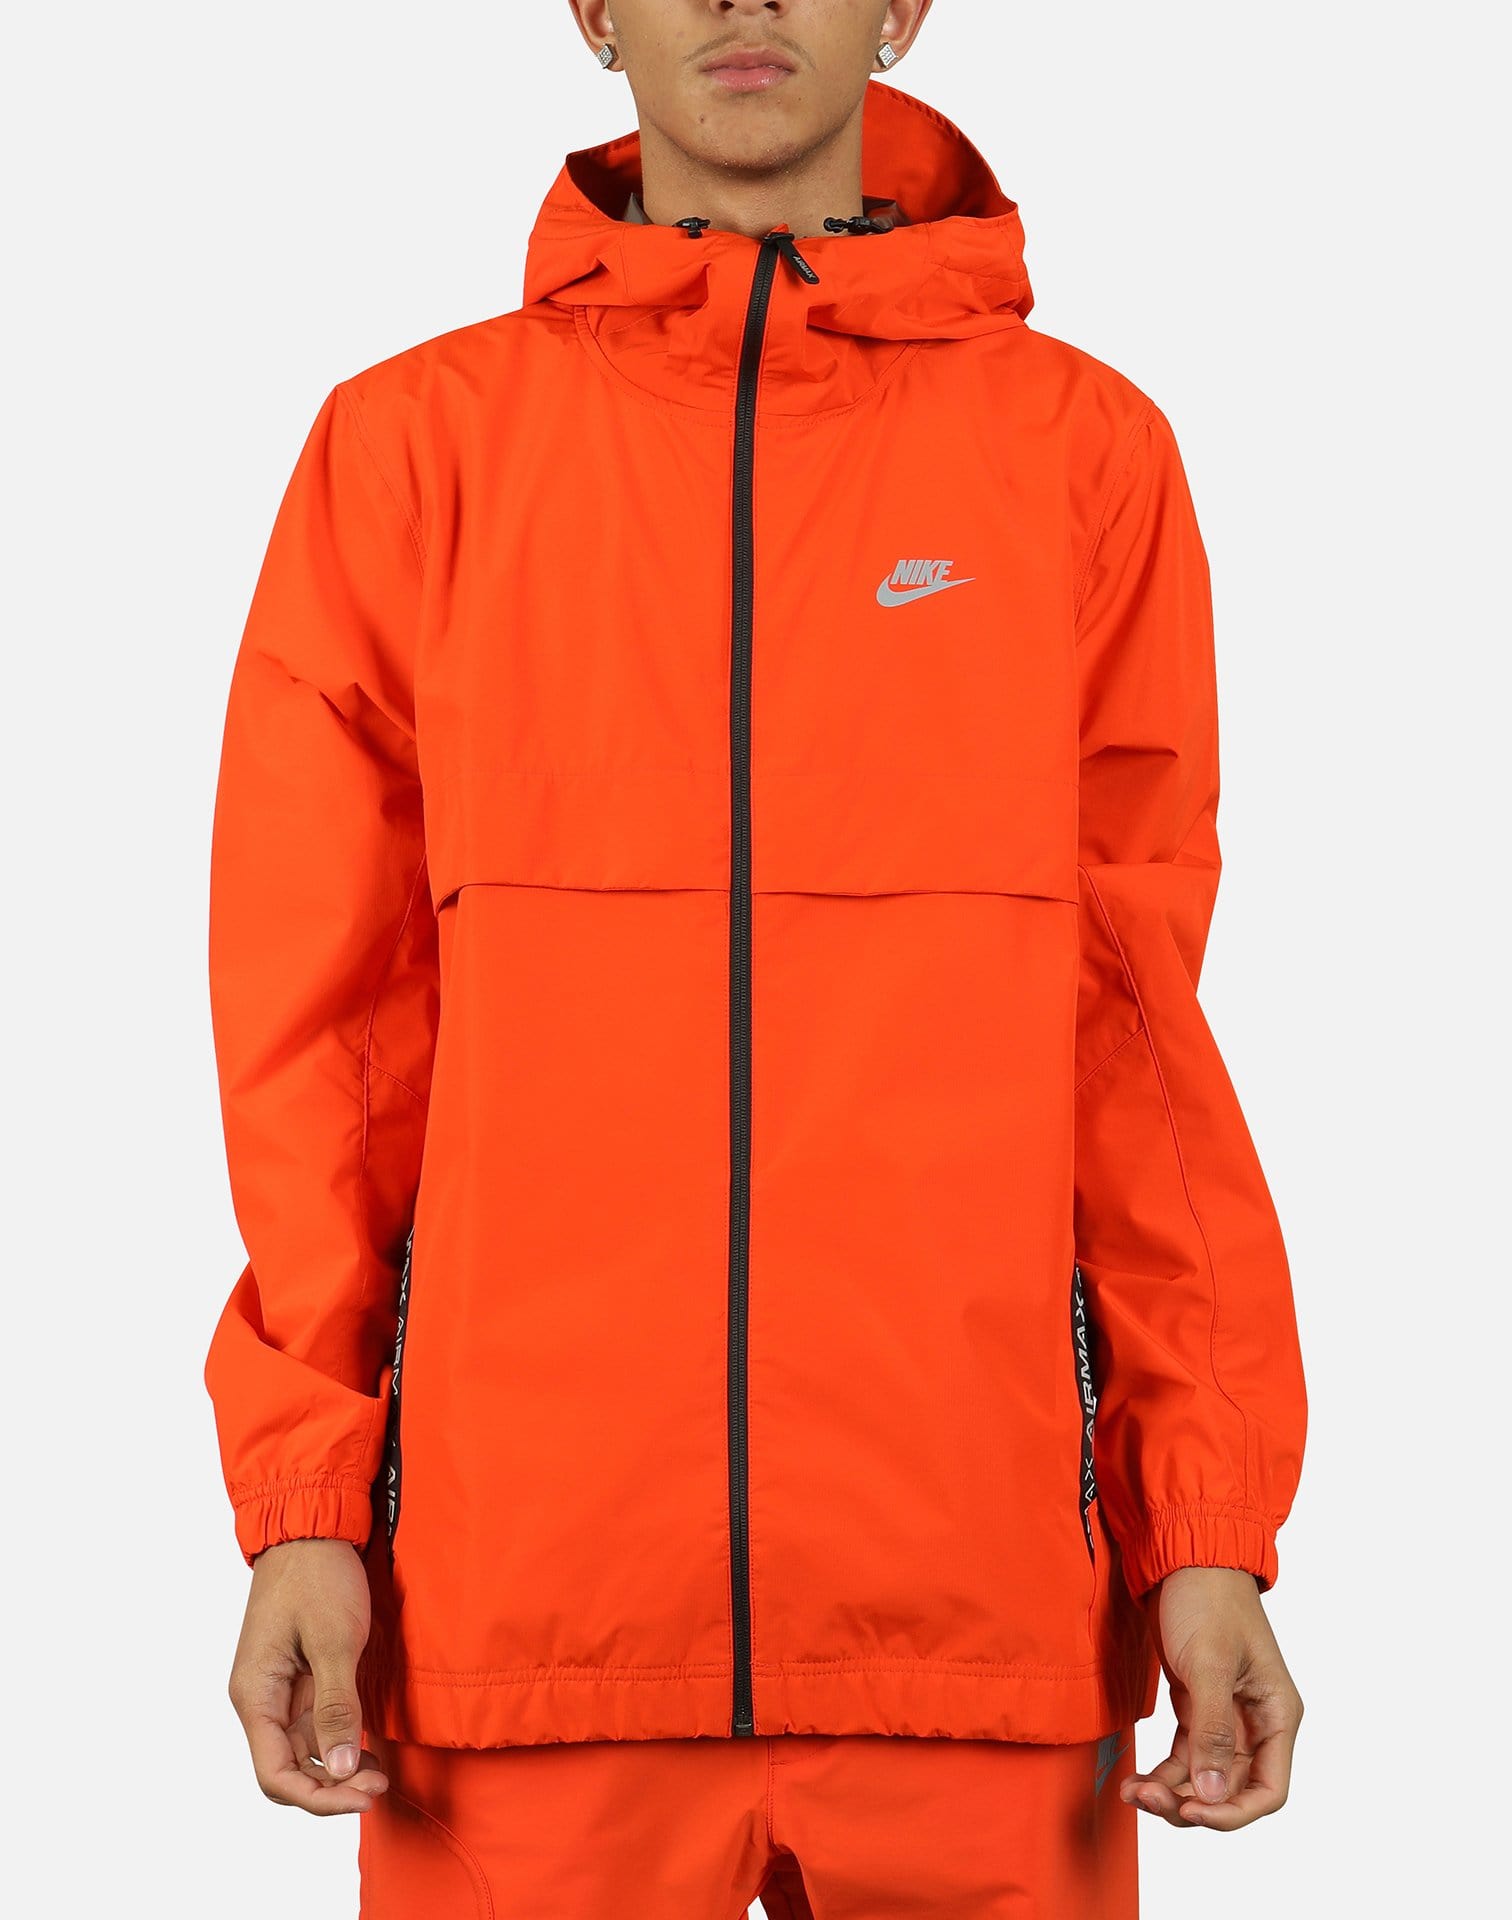 orange nike jacket